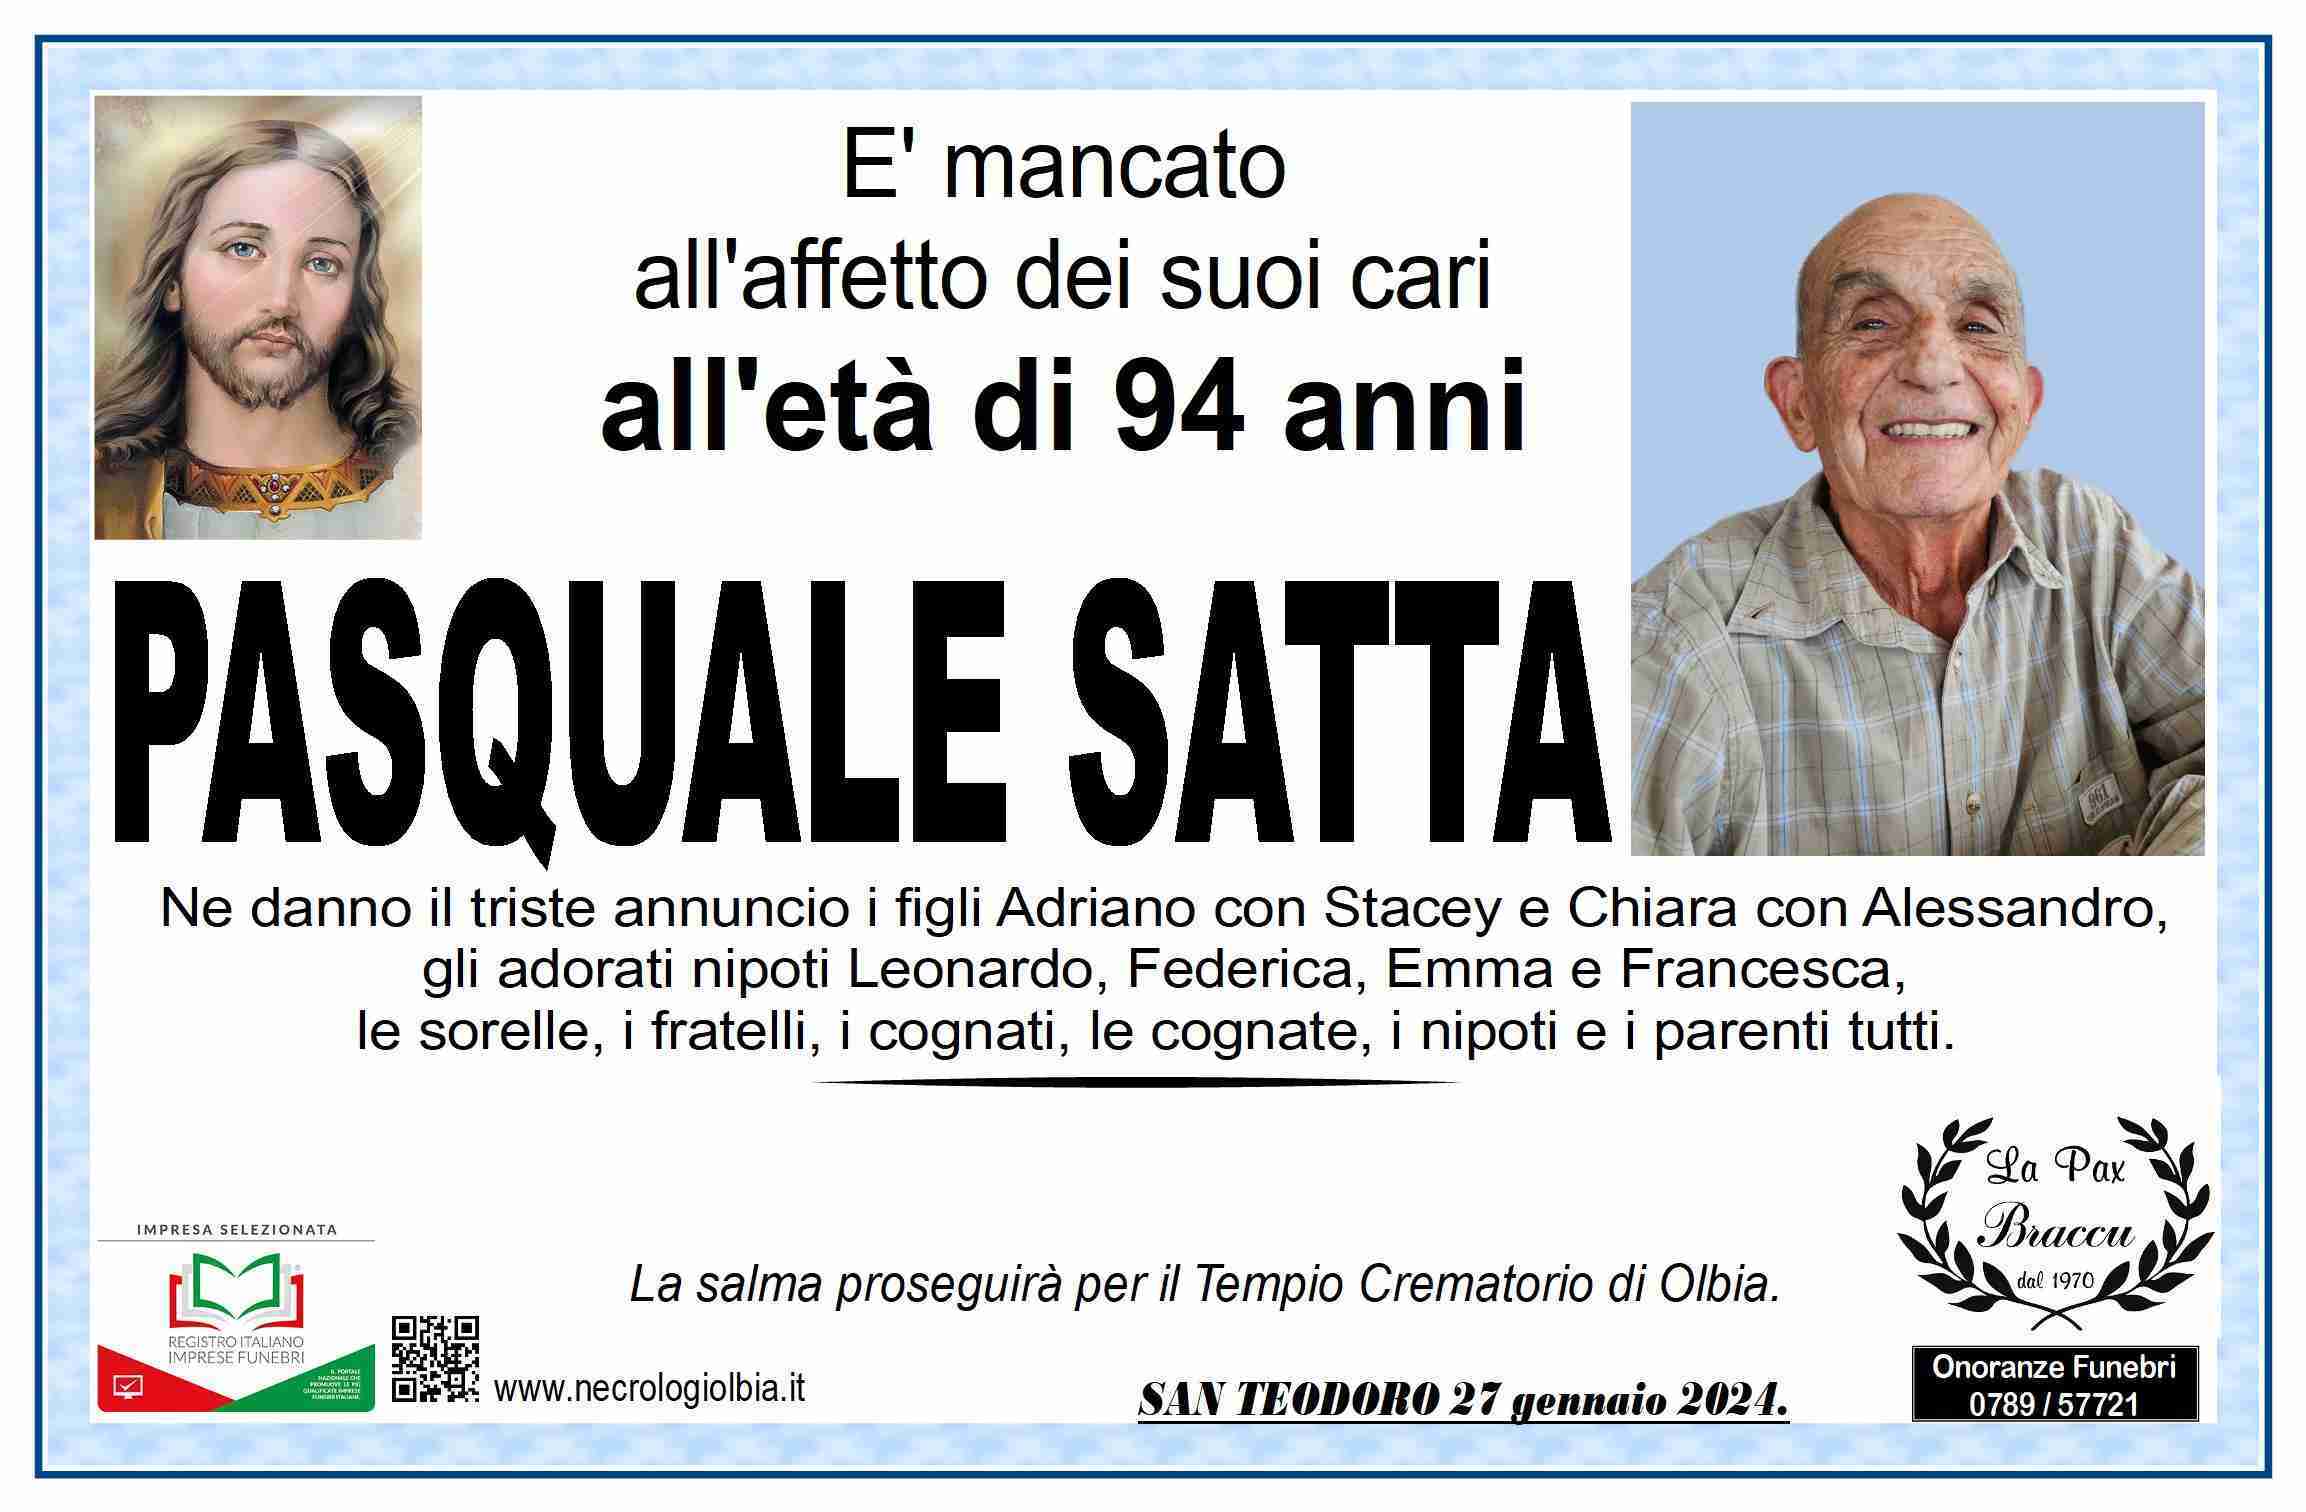 Pasquale Satta